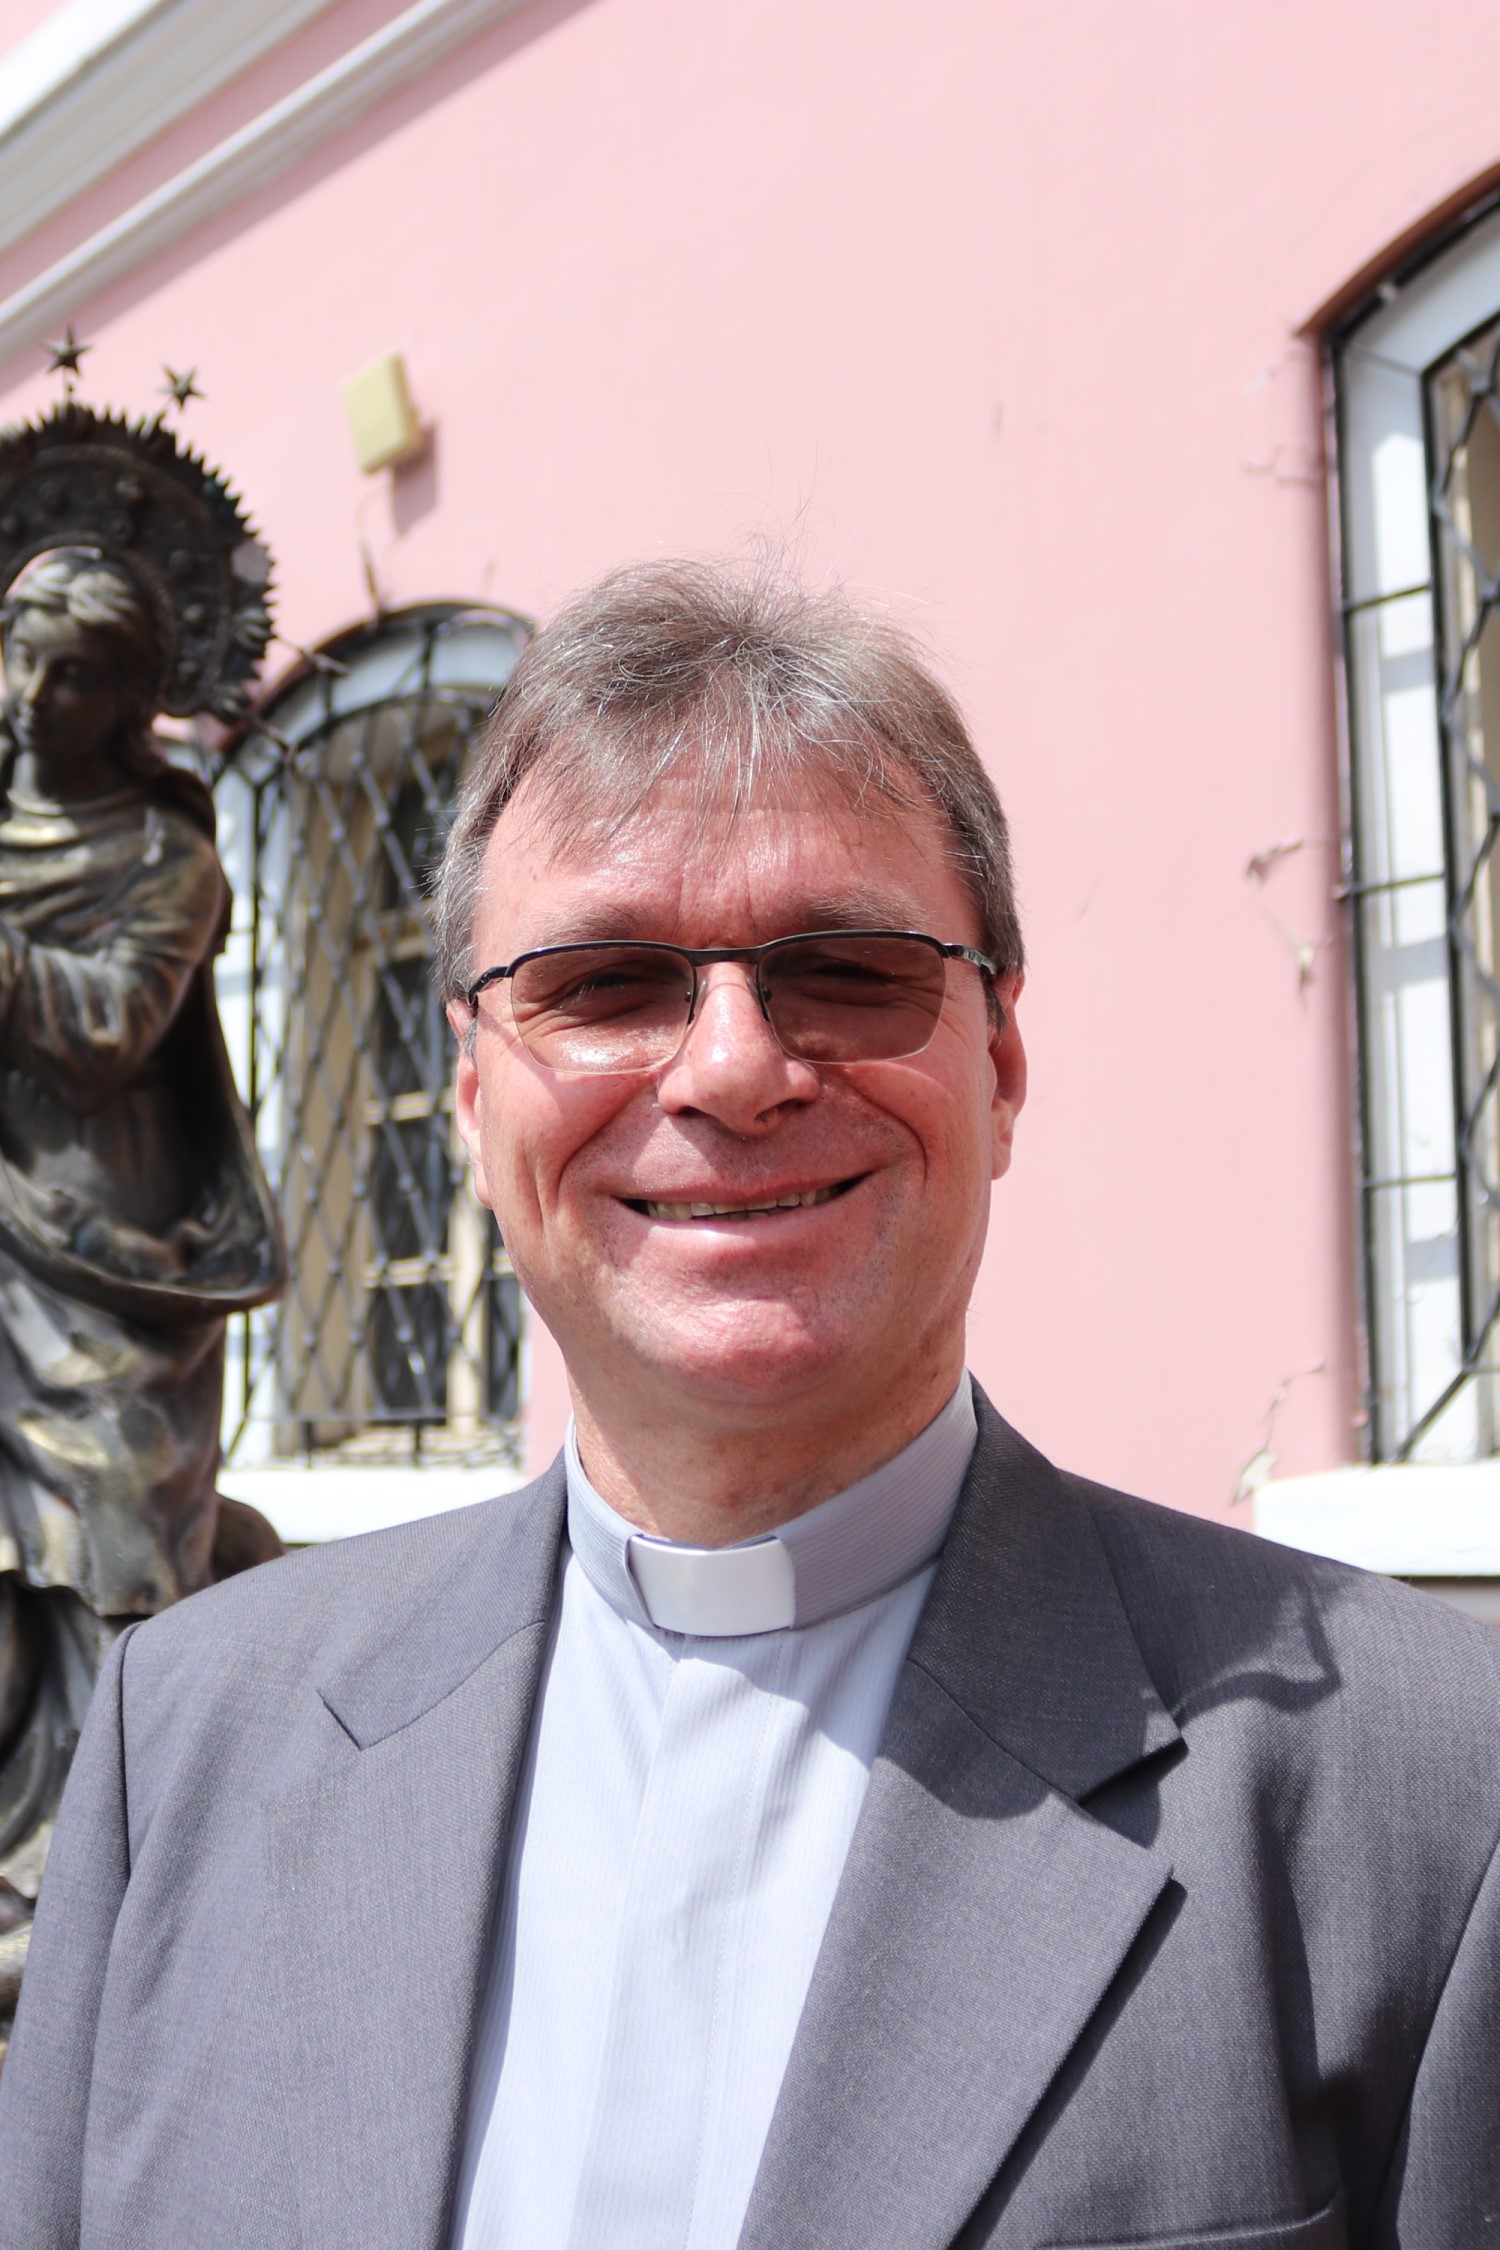  Padre Martín Schlachtbauer, Representante de la Arquidiócesis de Múnich y Freising